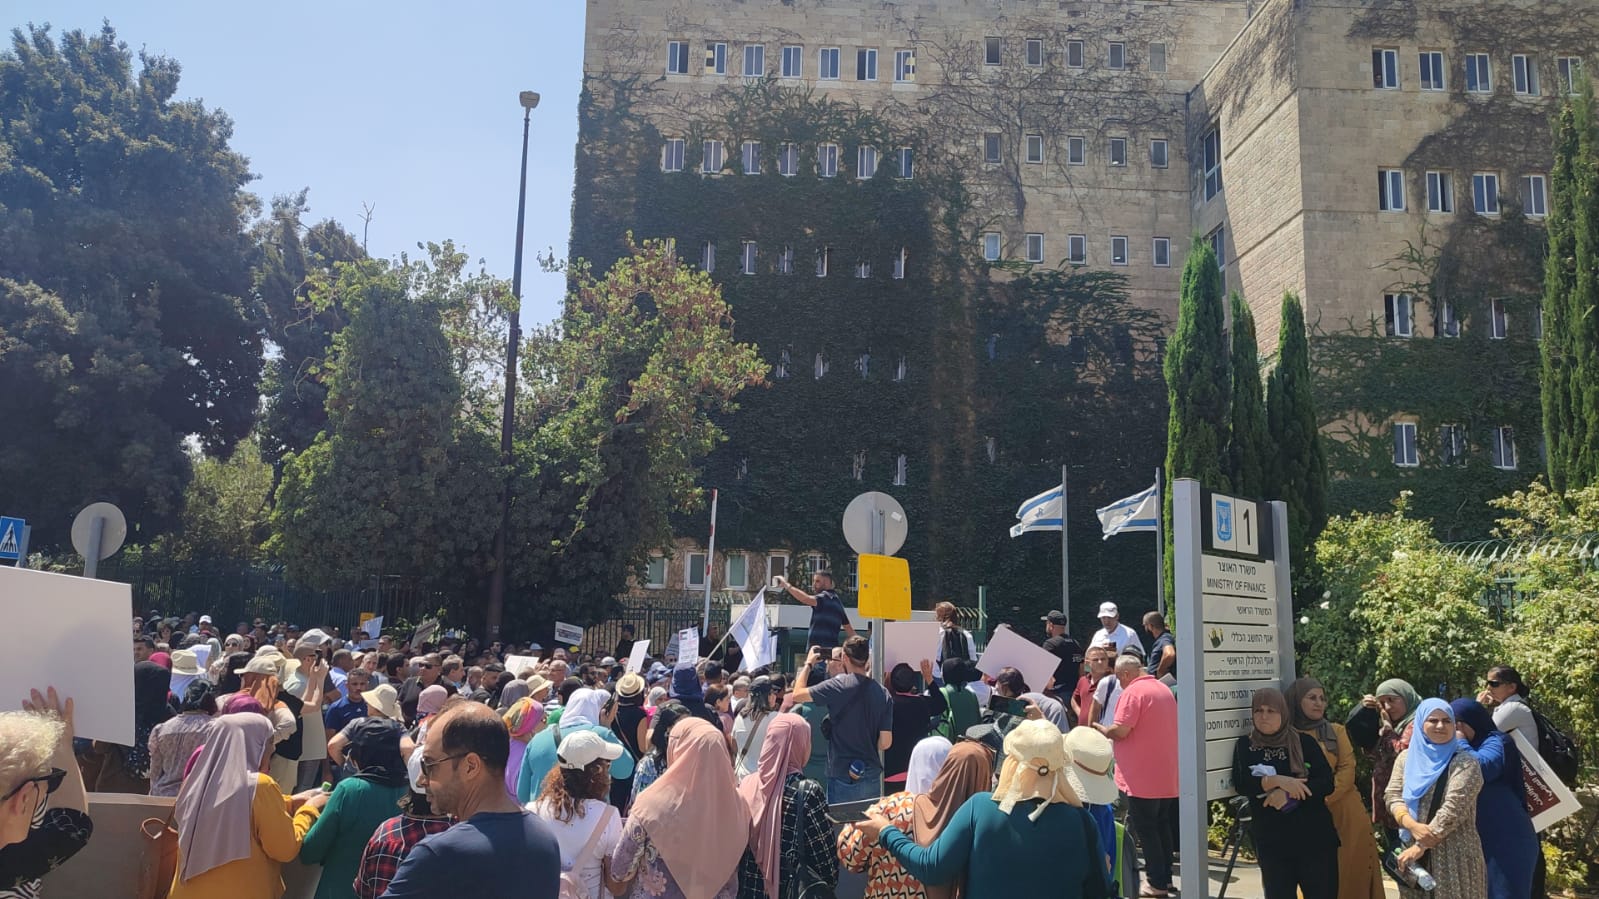 مظاهرة السلطات المحلية العربية أمام وزارة المالية في القدس، للمطالبة بتحويل الإضافات على الميزانية من الخطة الخماسية (تصوير : يانيف شارون)